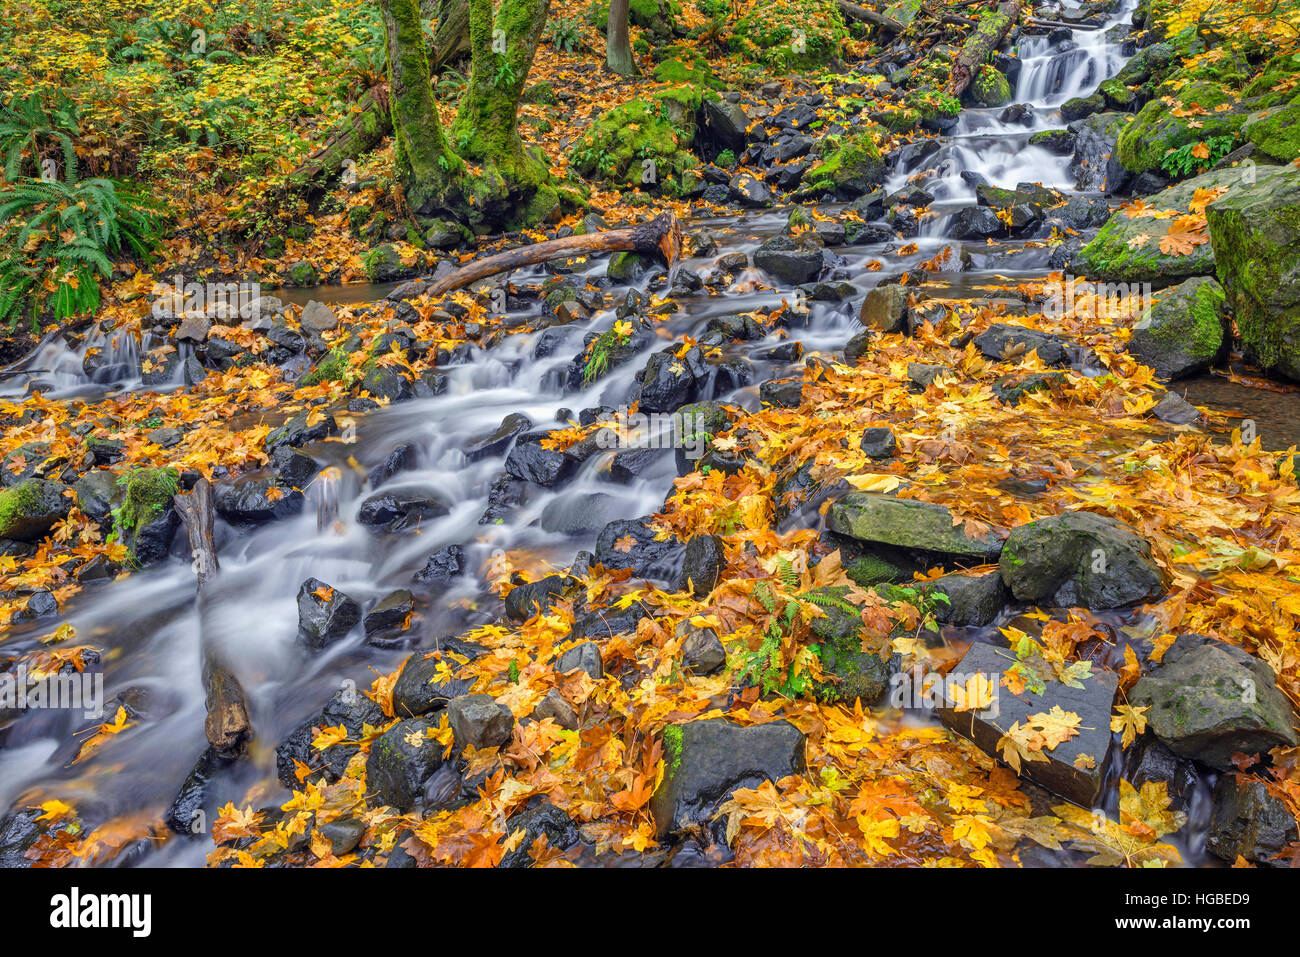 Stati Uniti d'America, Oregon, Columbia River Gorge National Scenic Area, fame Creek in autunno con caduto foglie di acero, rocce e Moss. Foto Stock